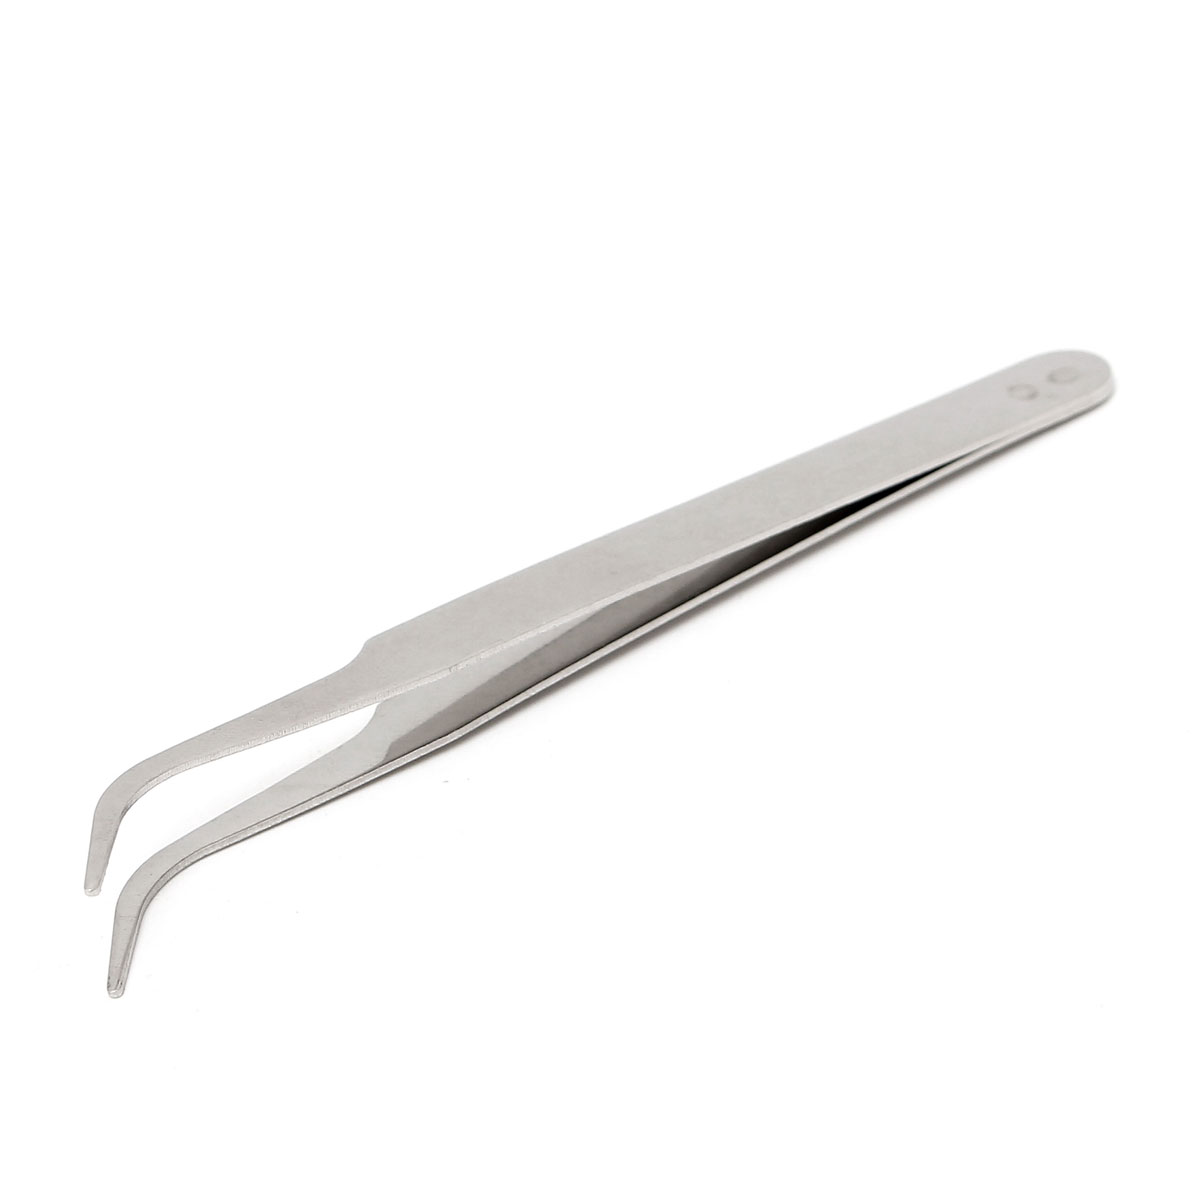 100mm-Stainless-Steel-High-Precision-Elbow-Tweezers-DIY-Tool-1096797-6